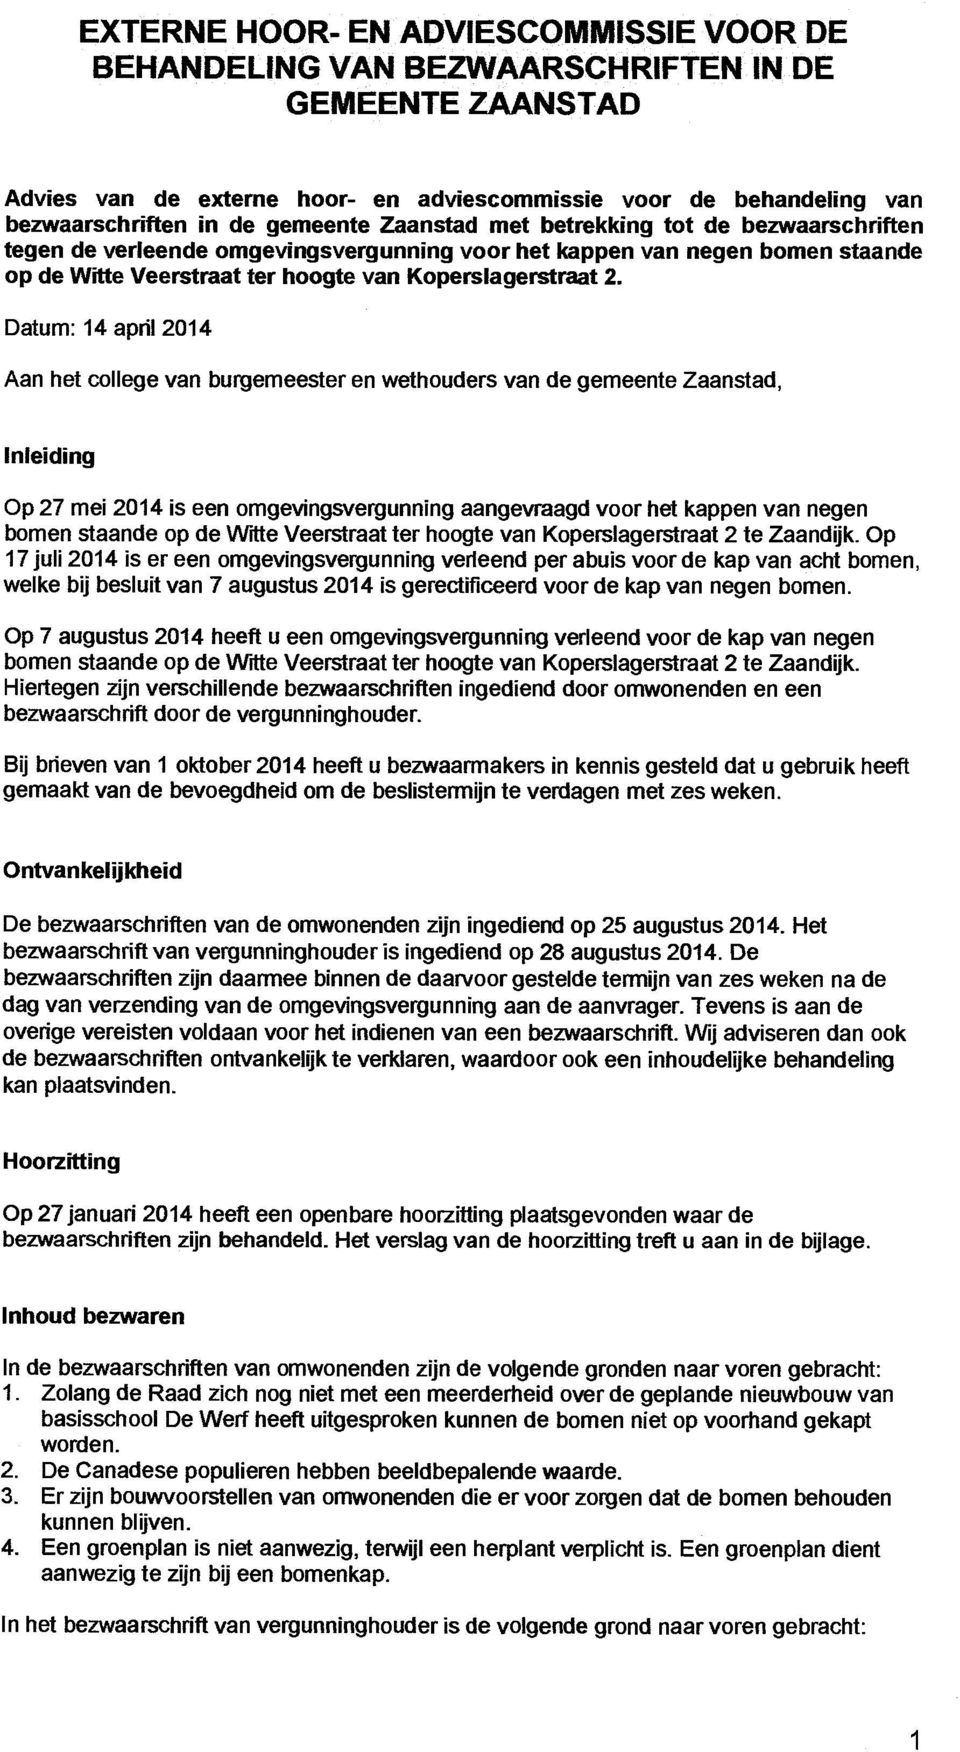 Datum: 14 april 2014 Aan het college van burgemeester en wethouders van de gemeente Zaanstad, Inleiding Op 27 mei 2014 is een omgevingsvergunning aangevraagd voor het kappen van negen bomen staande